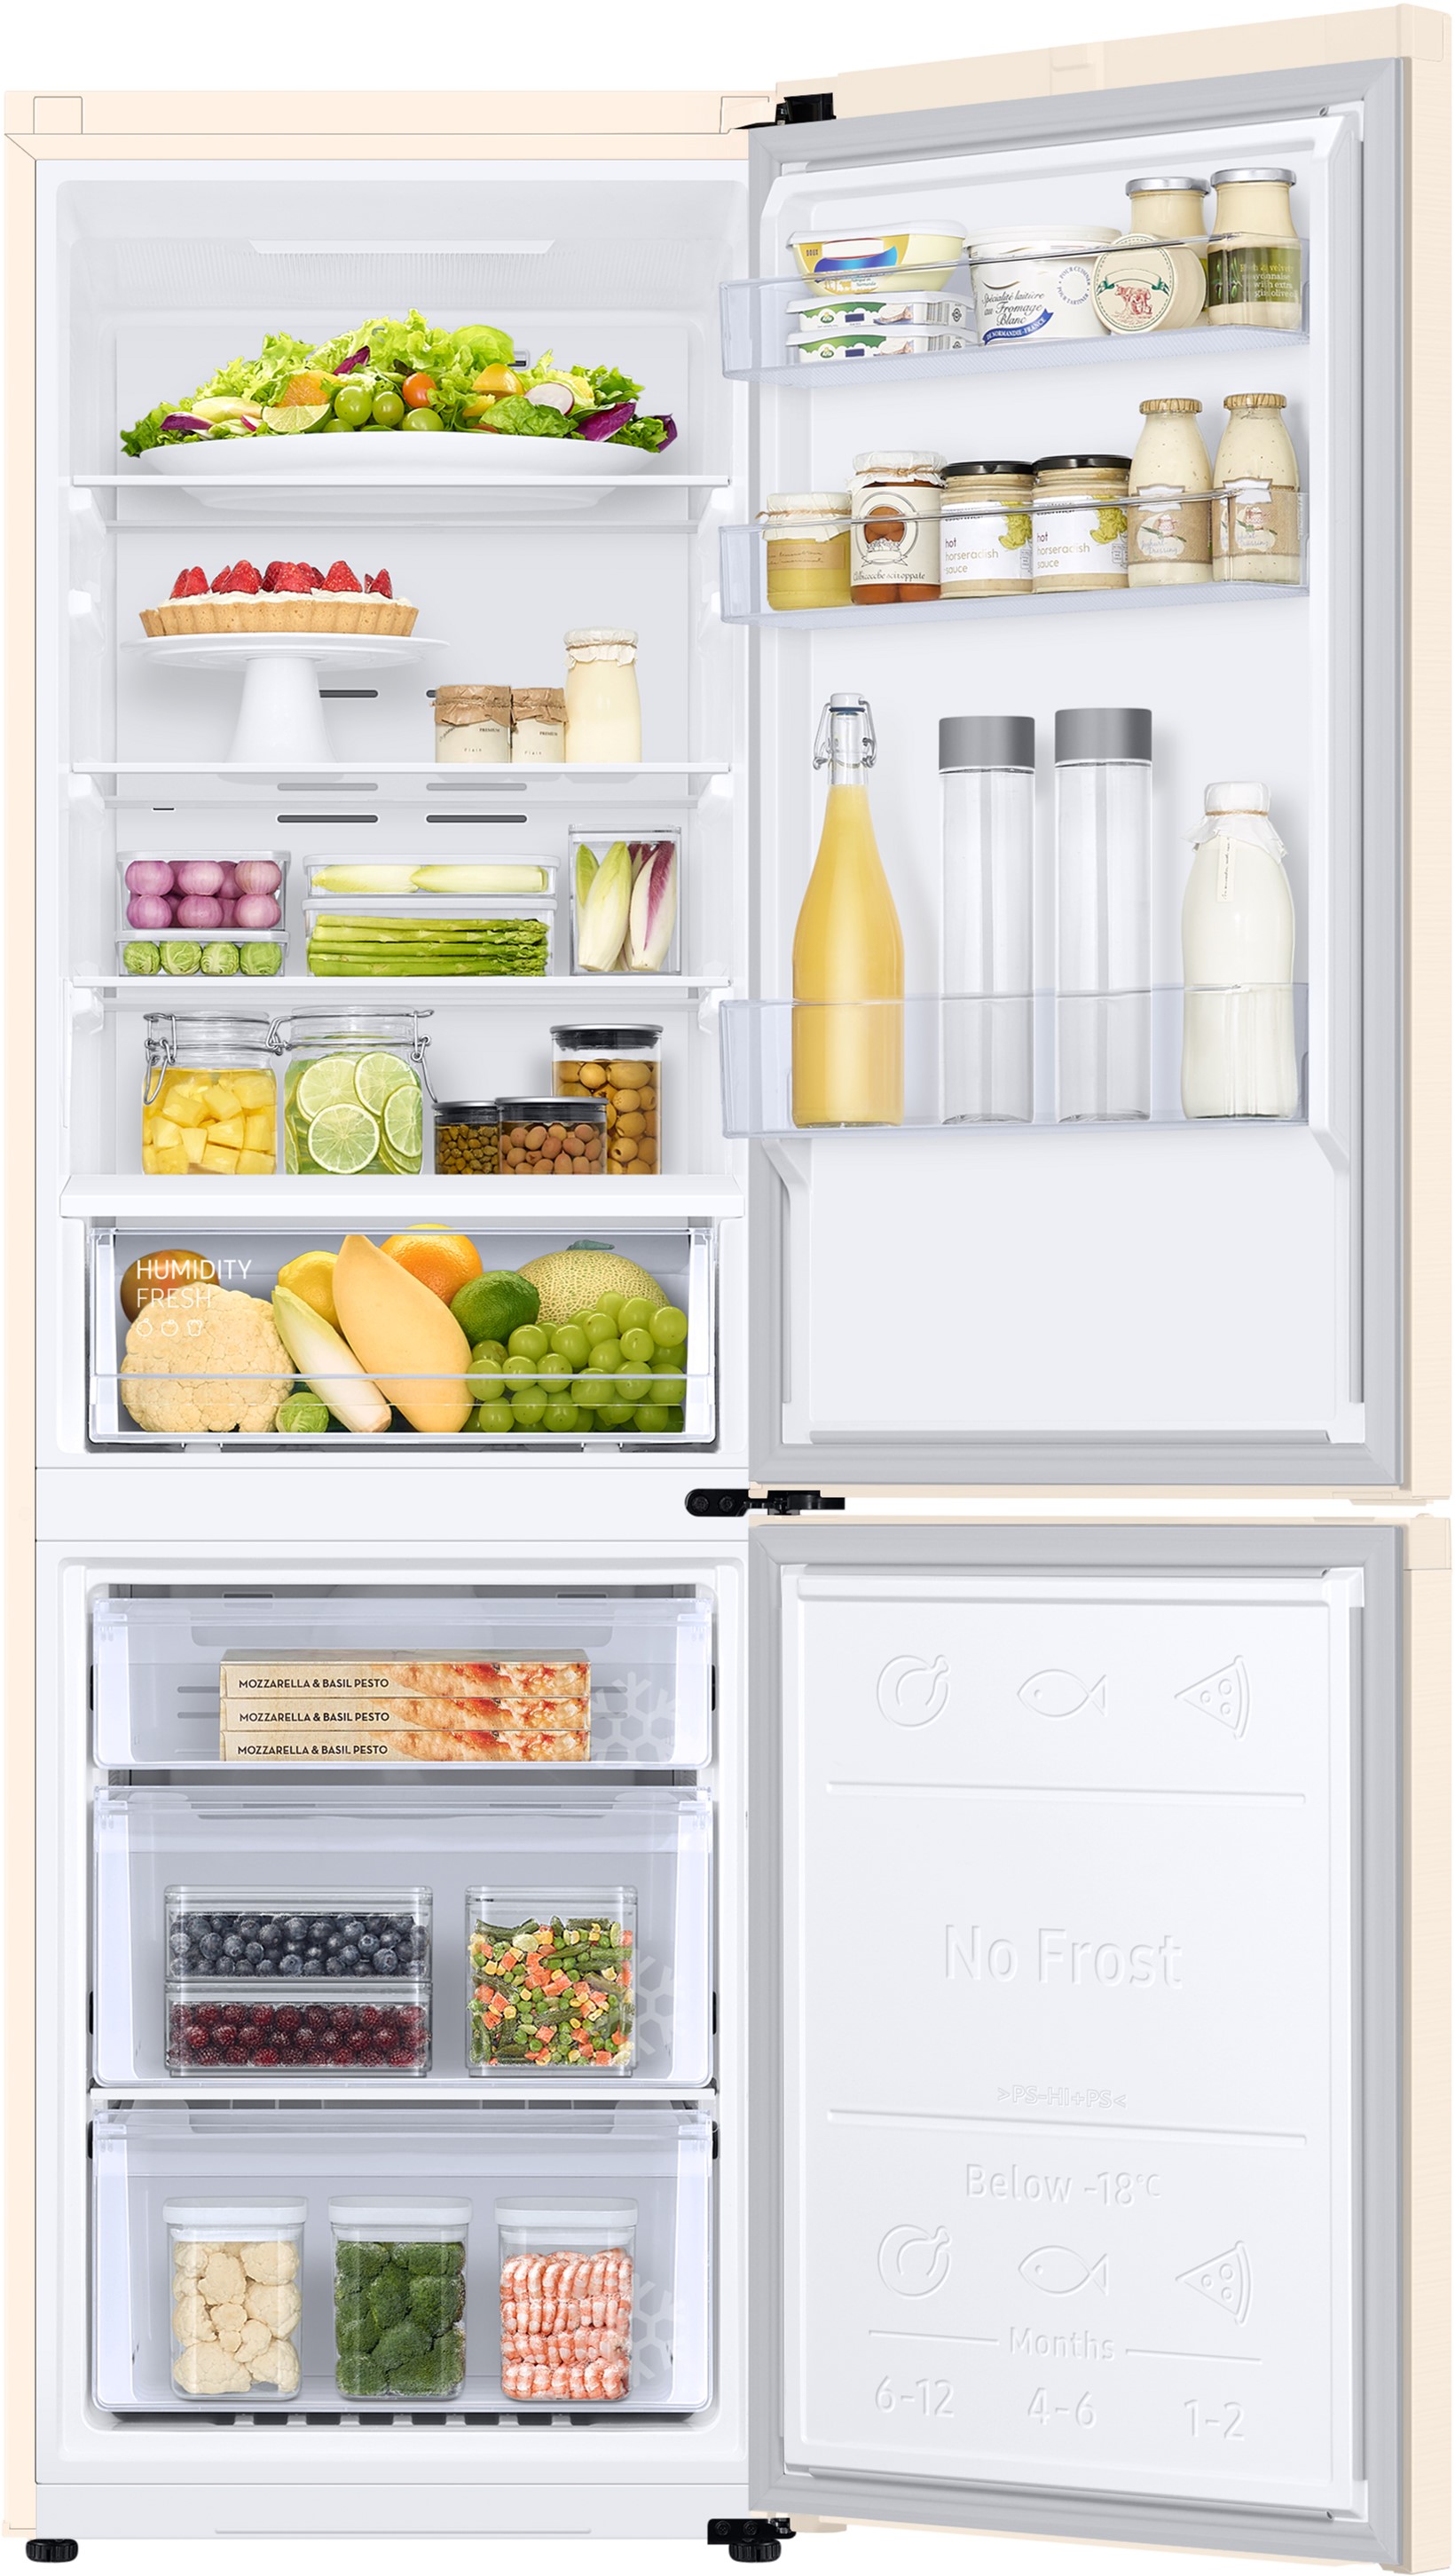 Холодильник Samsung RB34C600EEL/UA отзывы - изображения 5